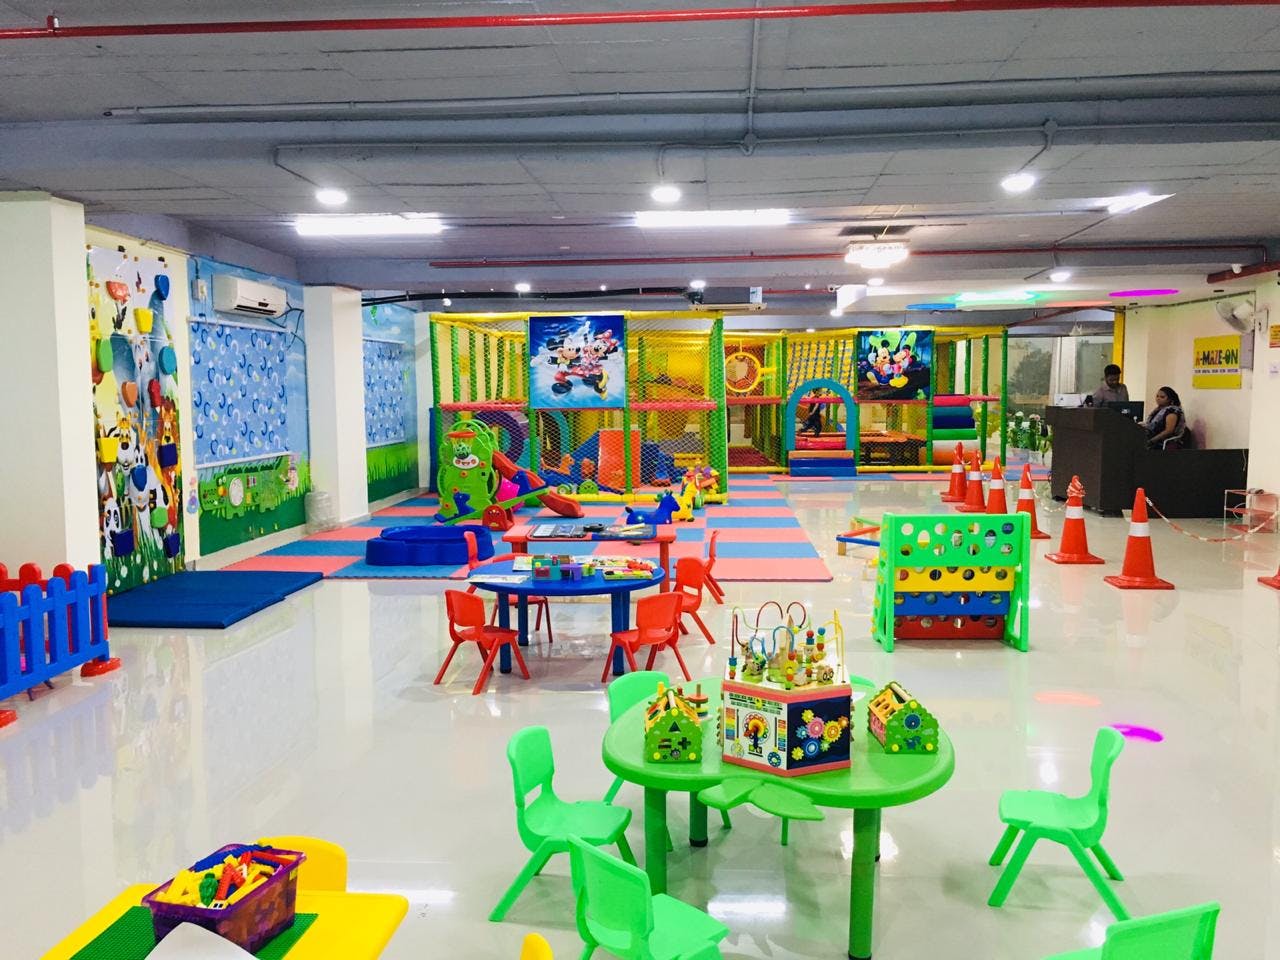 Kindergarten,Public space,Room,Interior design,Building,Play,Playground,Child,Recreation,Toy